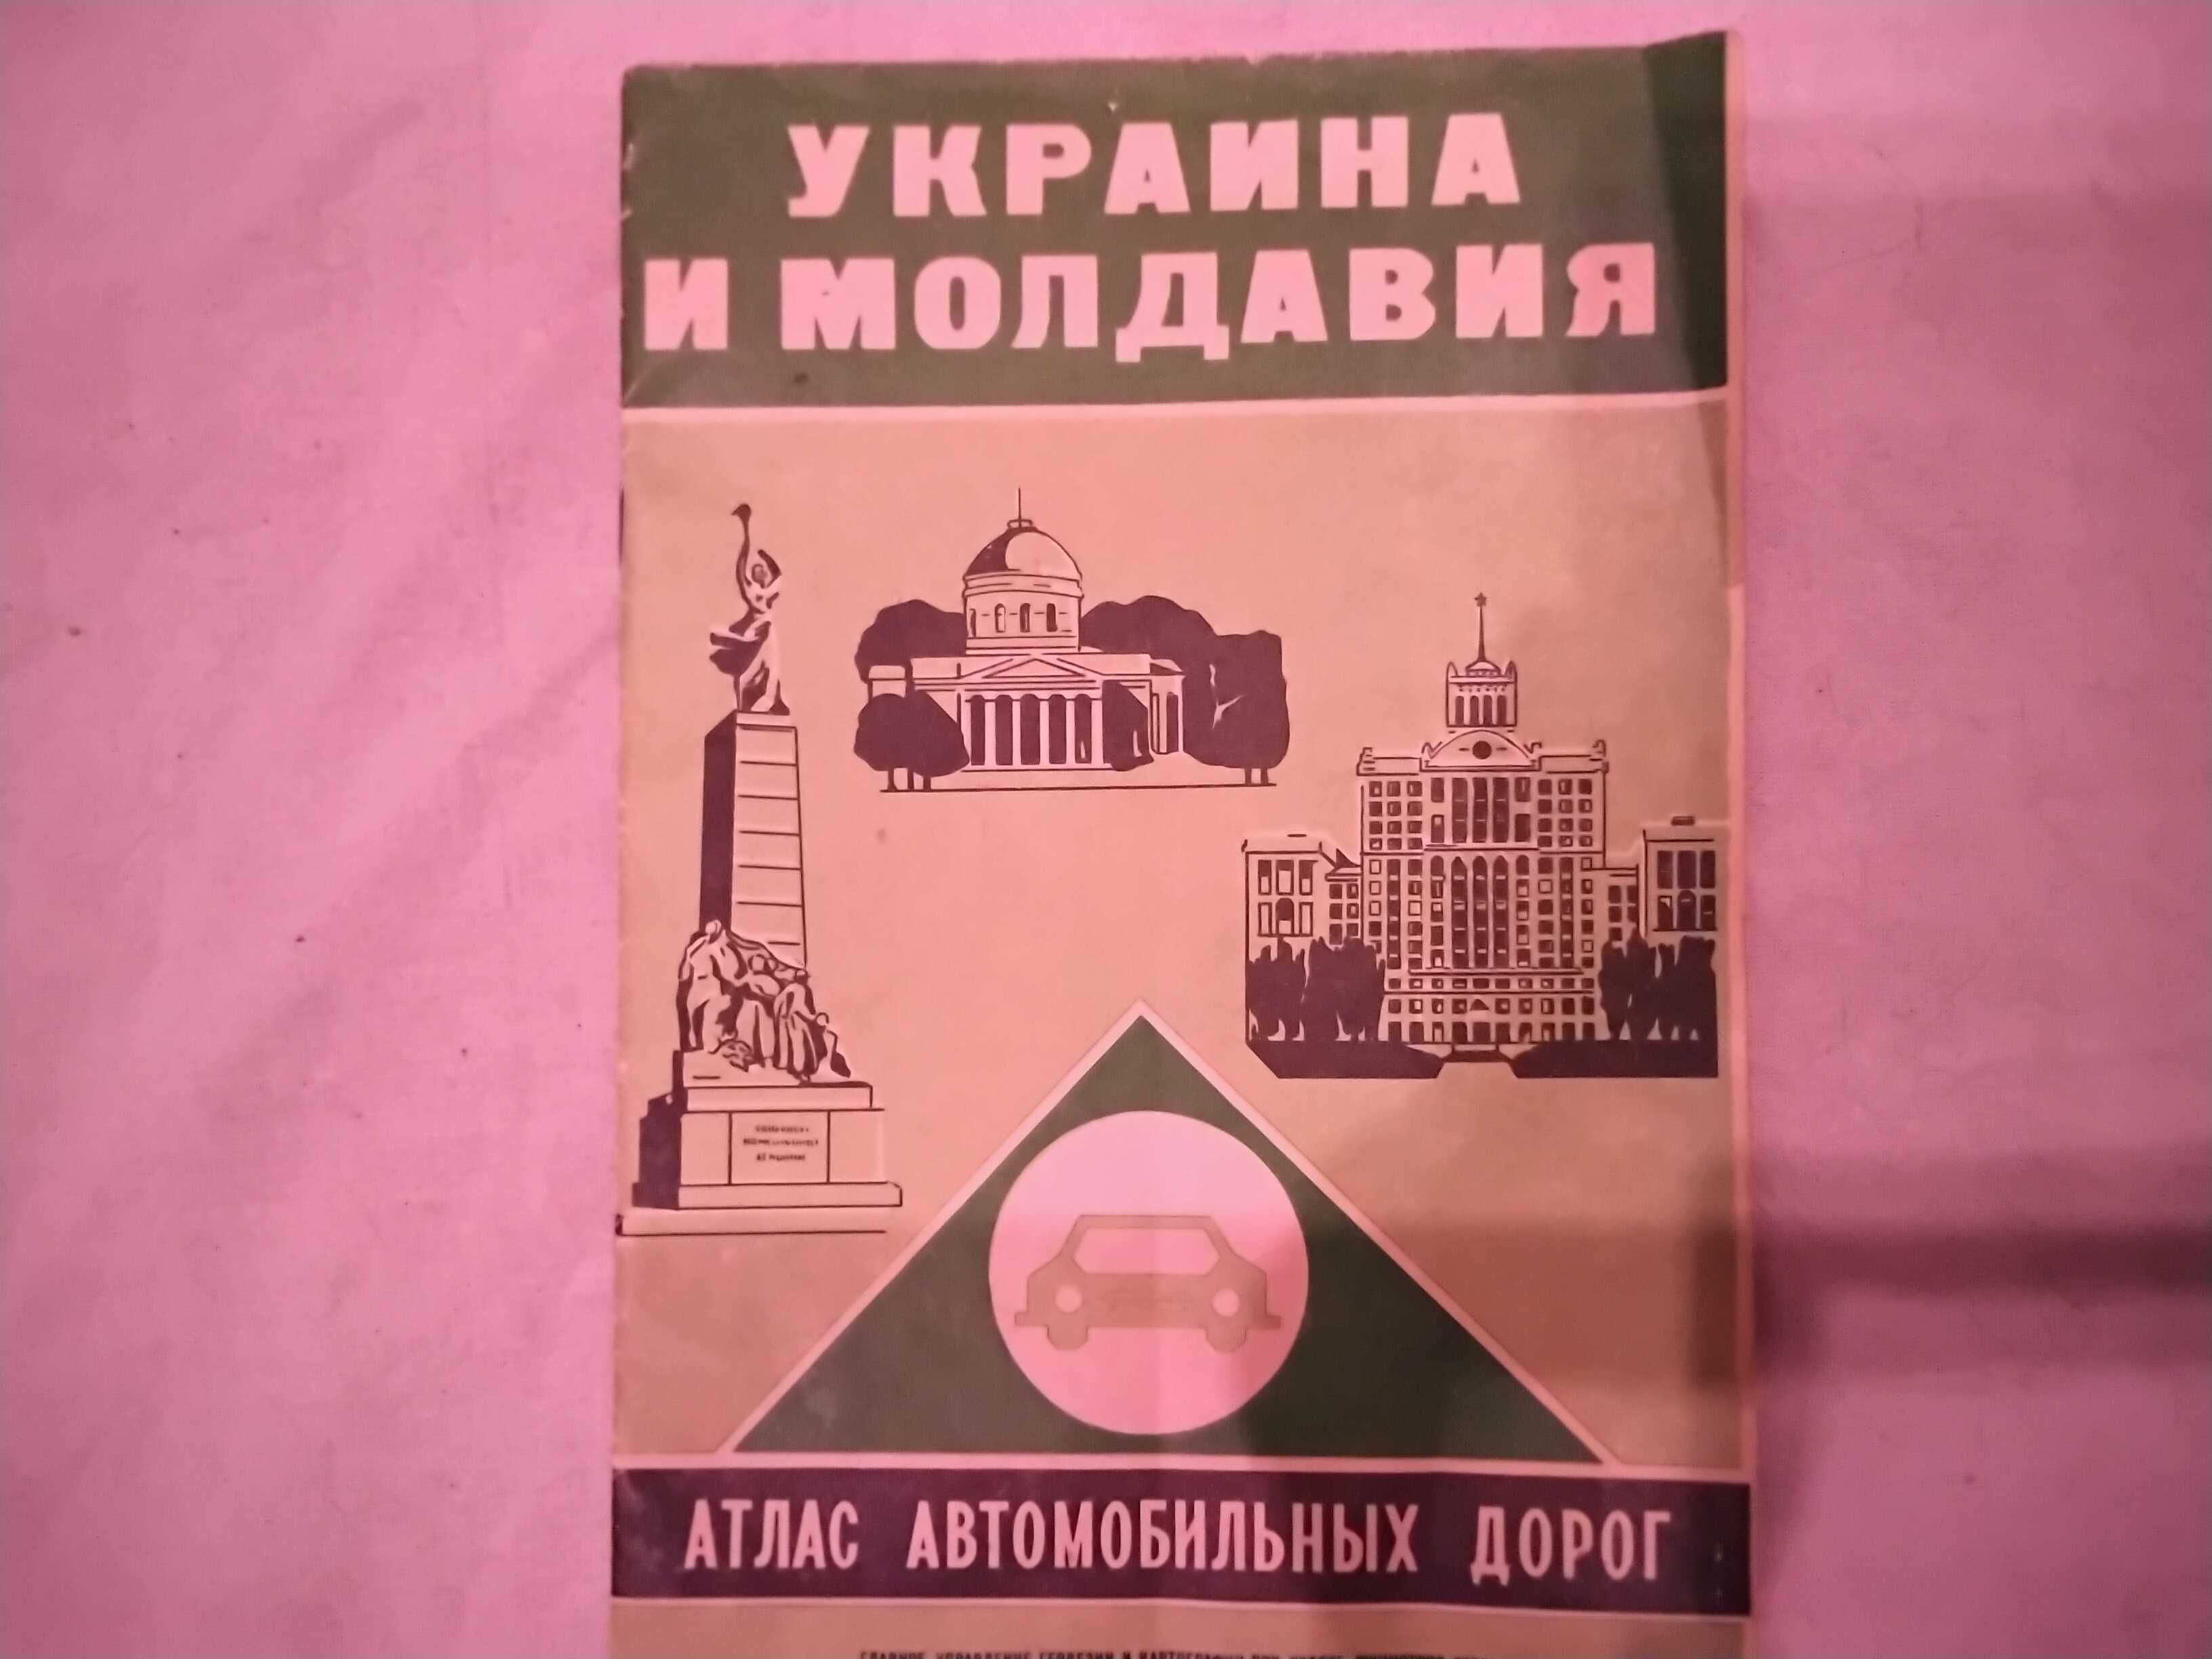 Атлас автомобильных дорог Украина и Молдавия 1977 г антиквариат